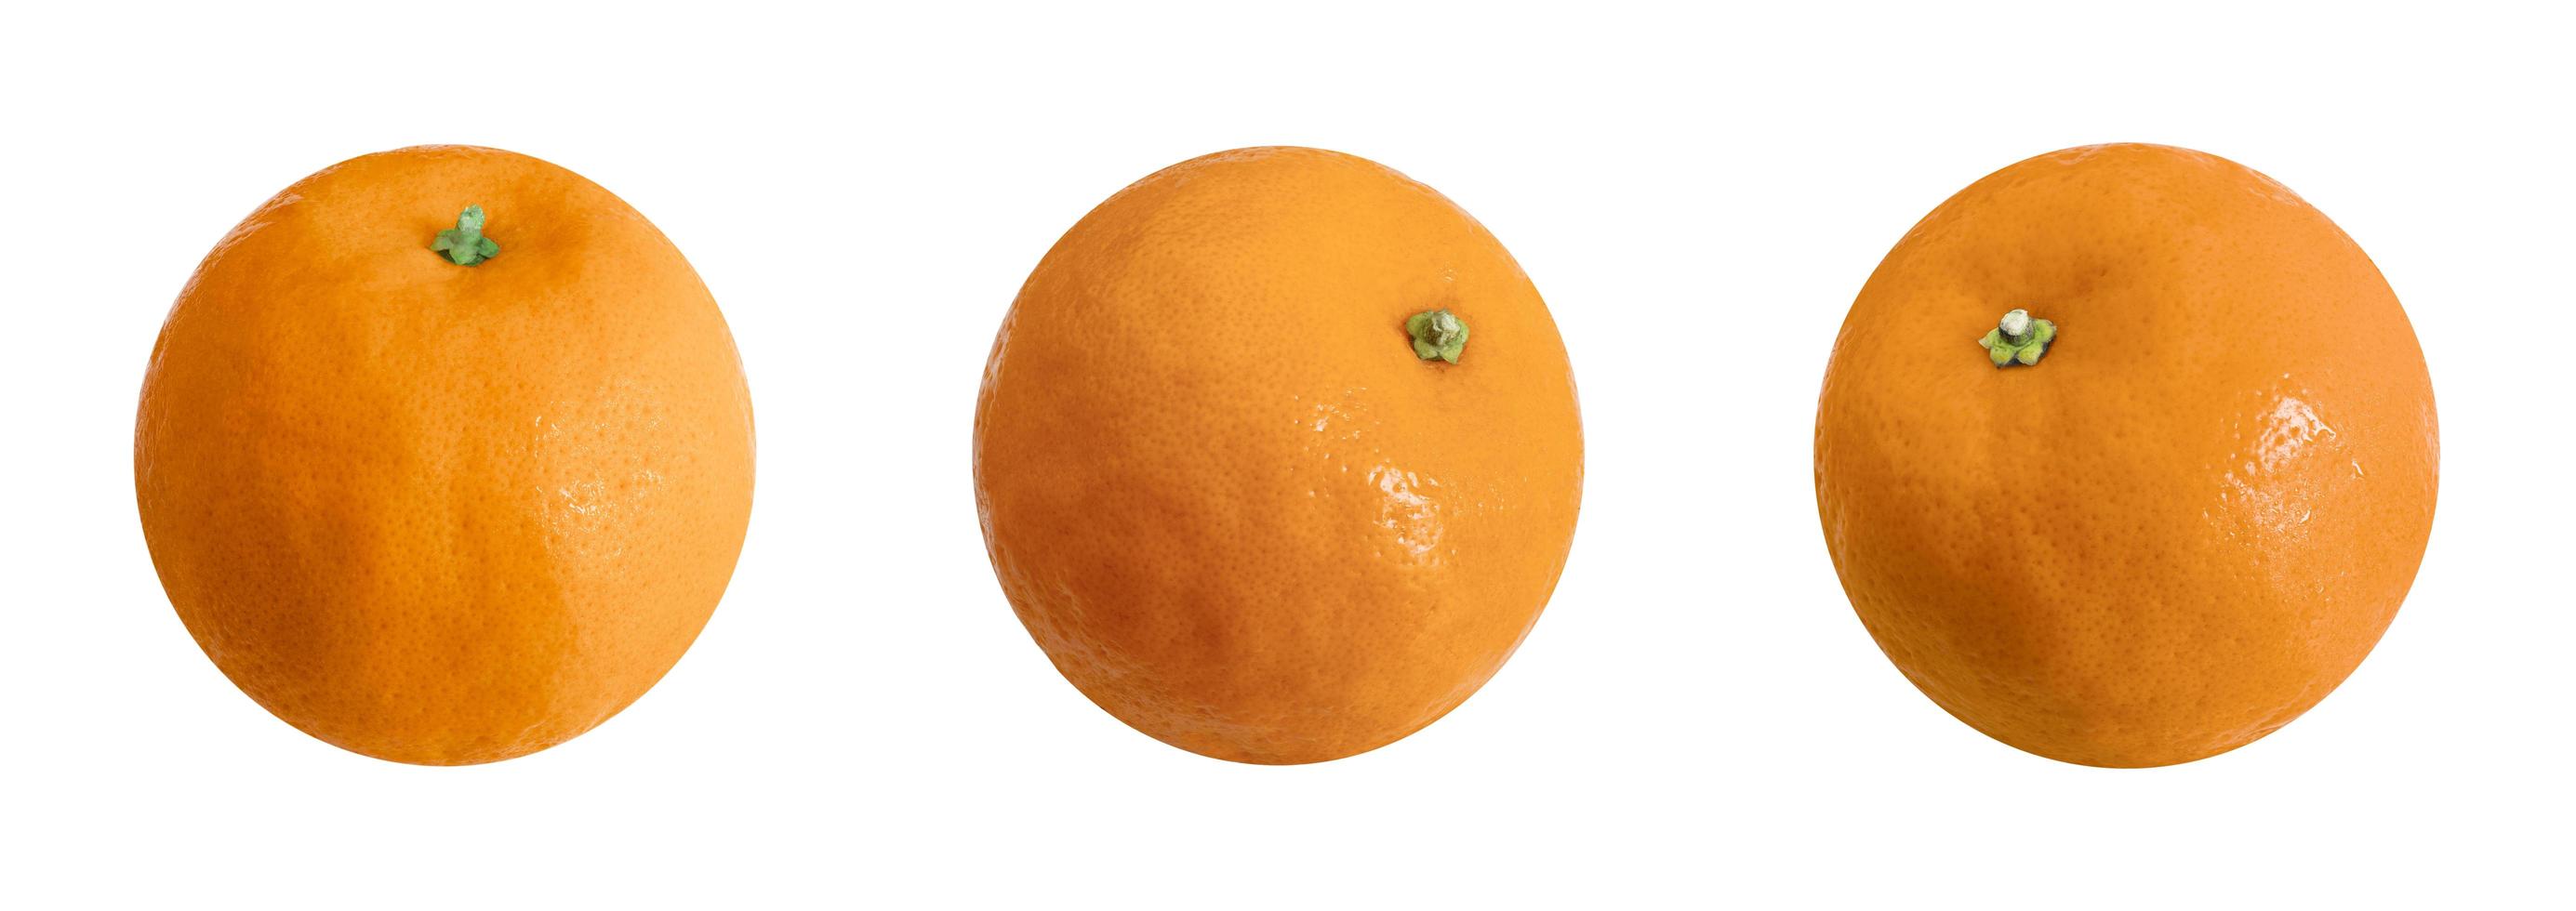 Three oranges isolated on white background, fruit on white background,clipping path photo